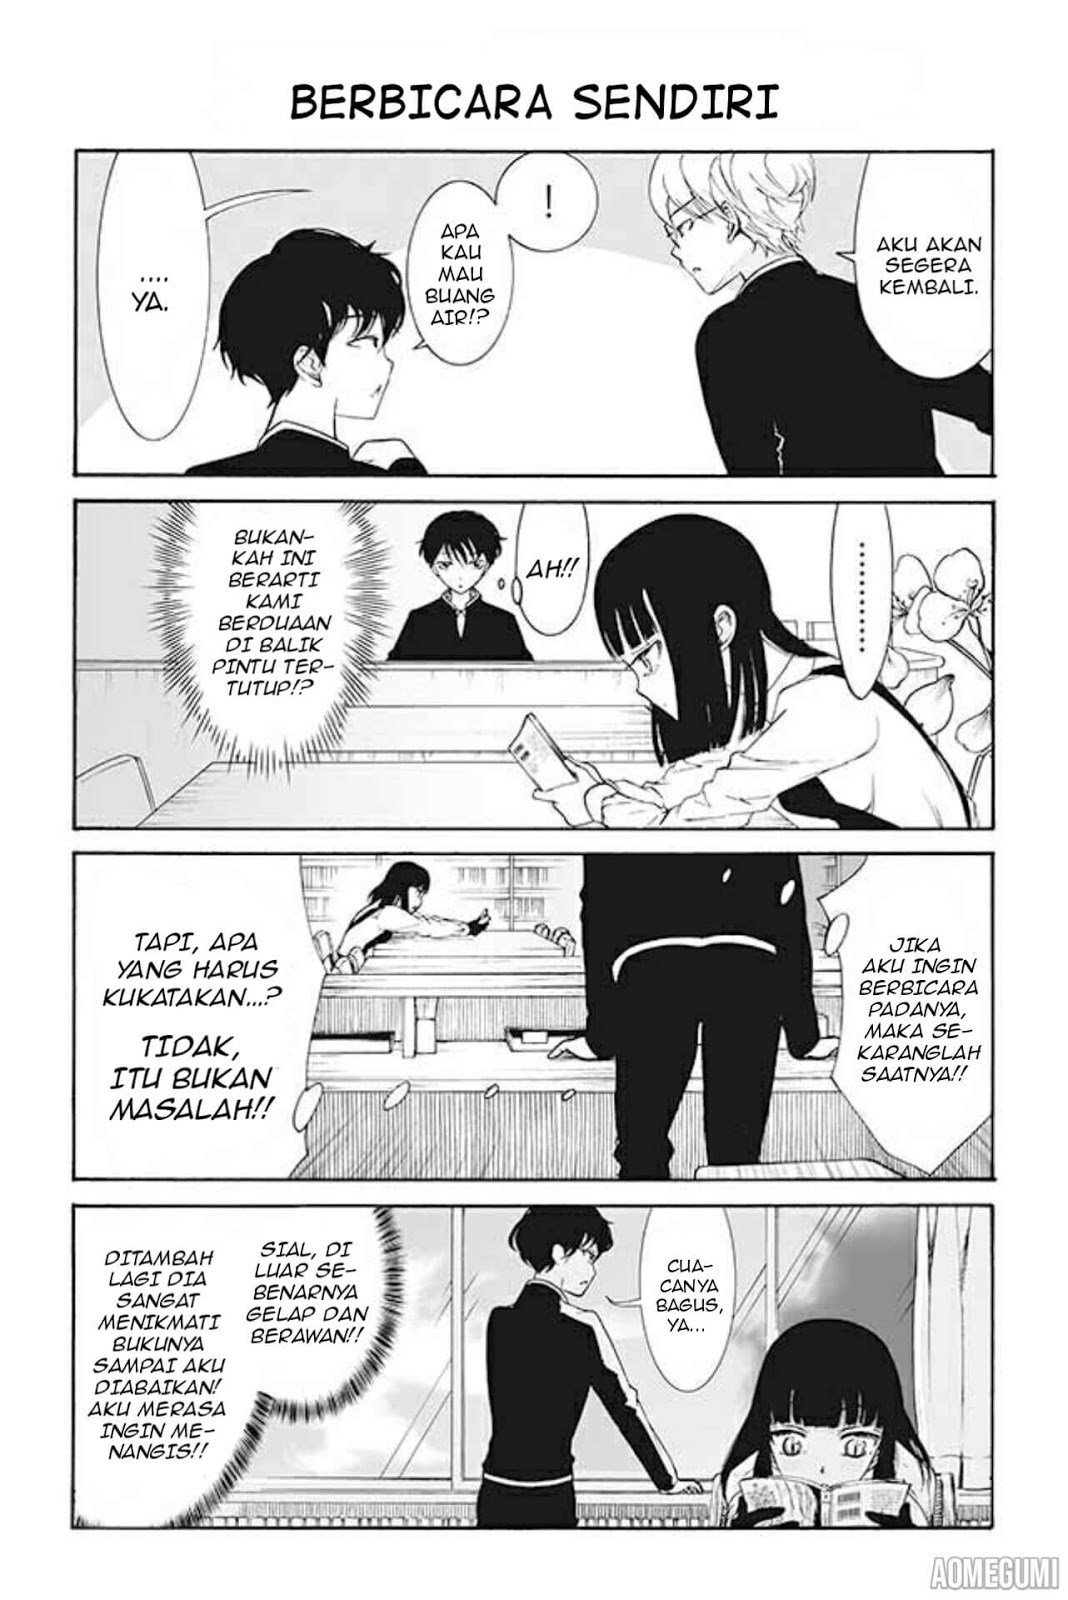 Baca Kuzu to Megane to Bungaku Shoujo Chapter 23  - GudangKomik